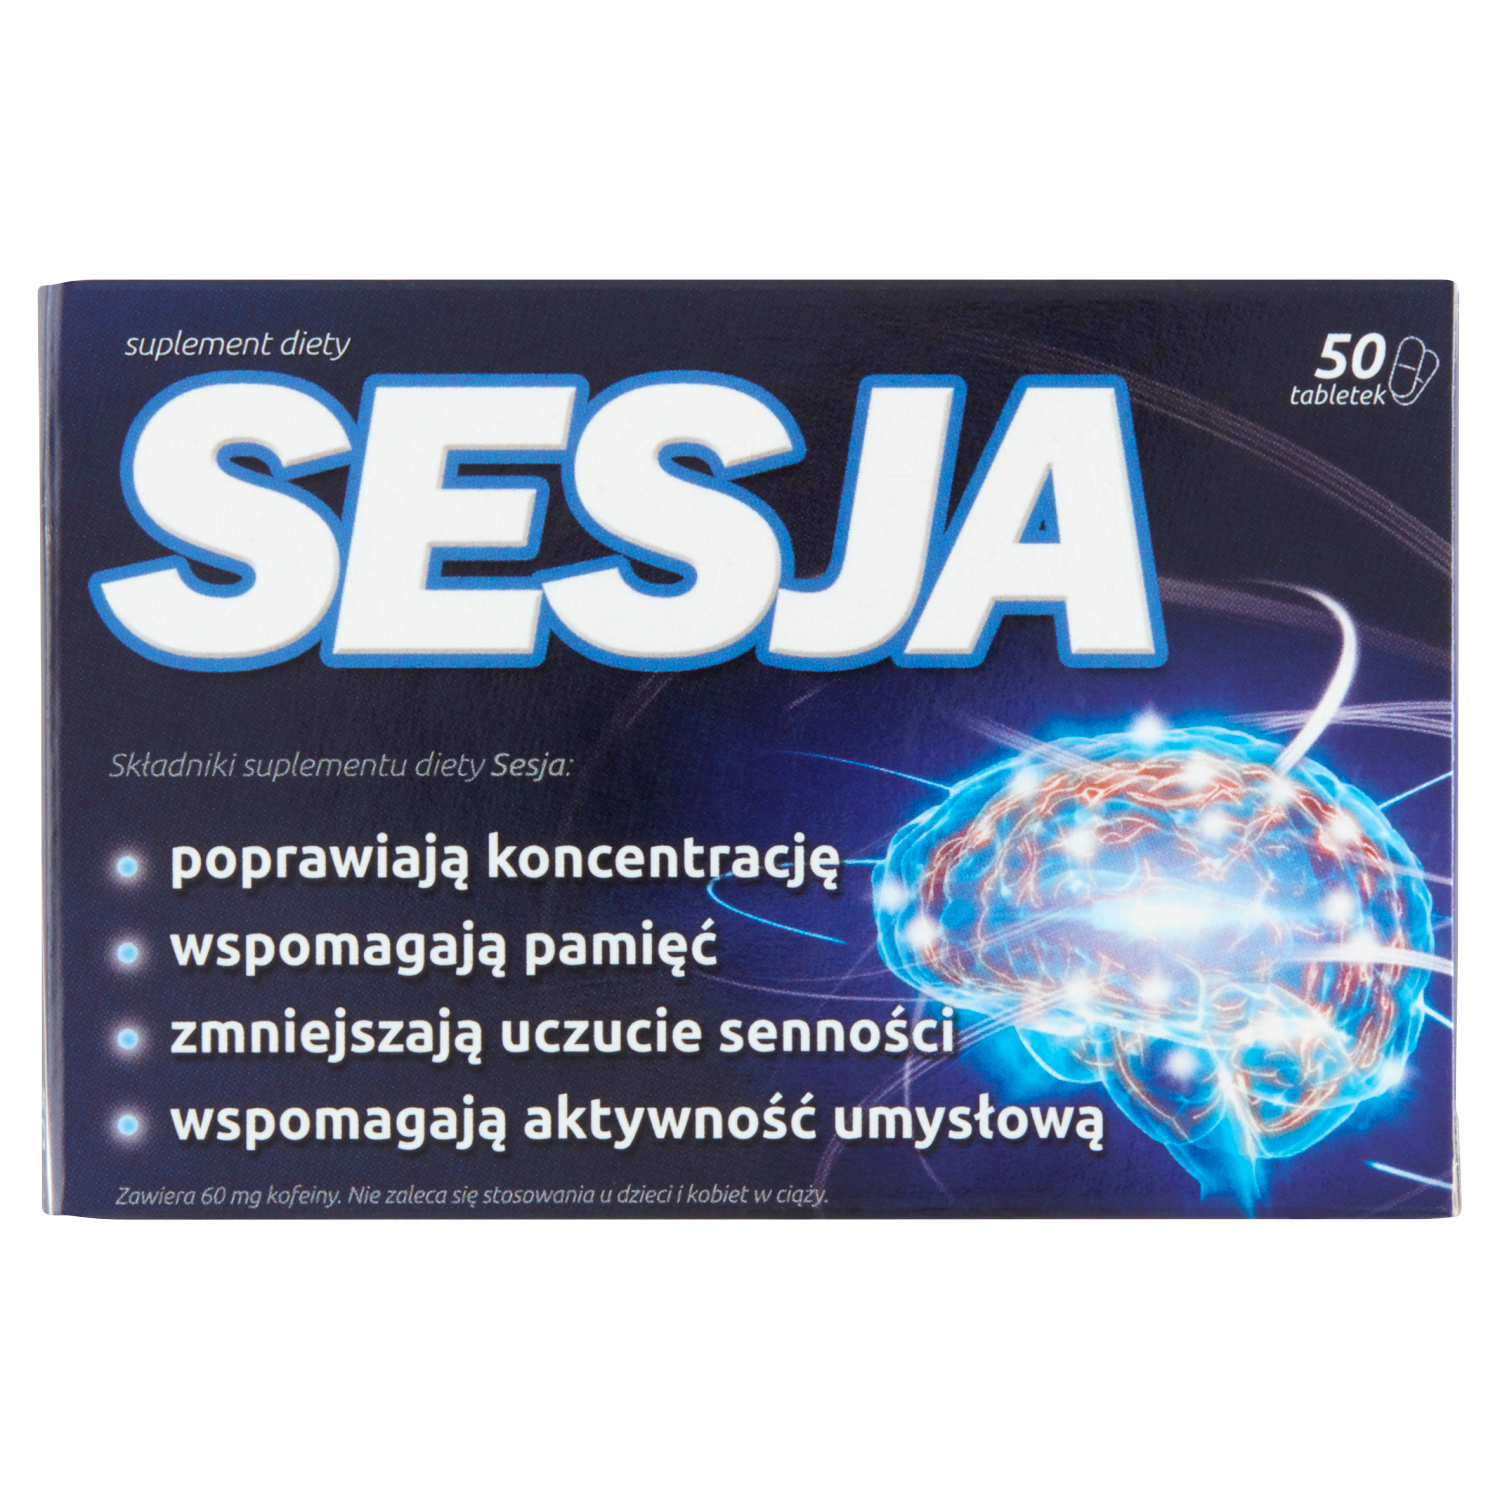 sesja биологически активная добавка 50 таблеток 1 упаковка Sesja биологически активная добавка, 50 таблеток/1 упаковка